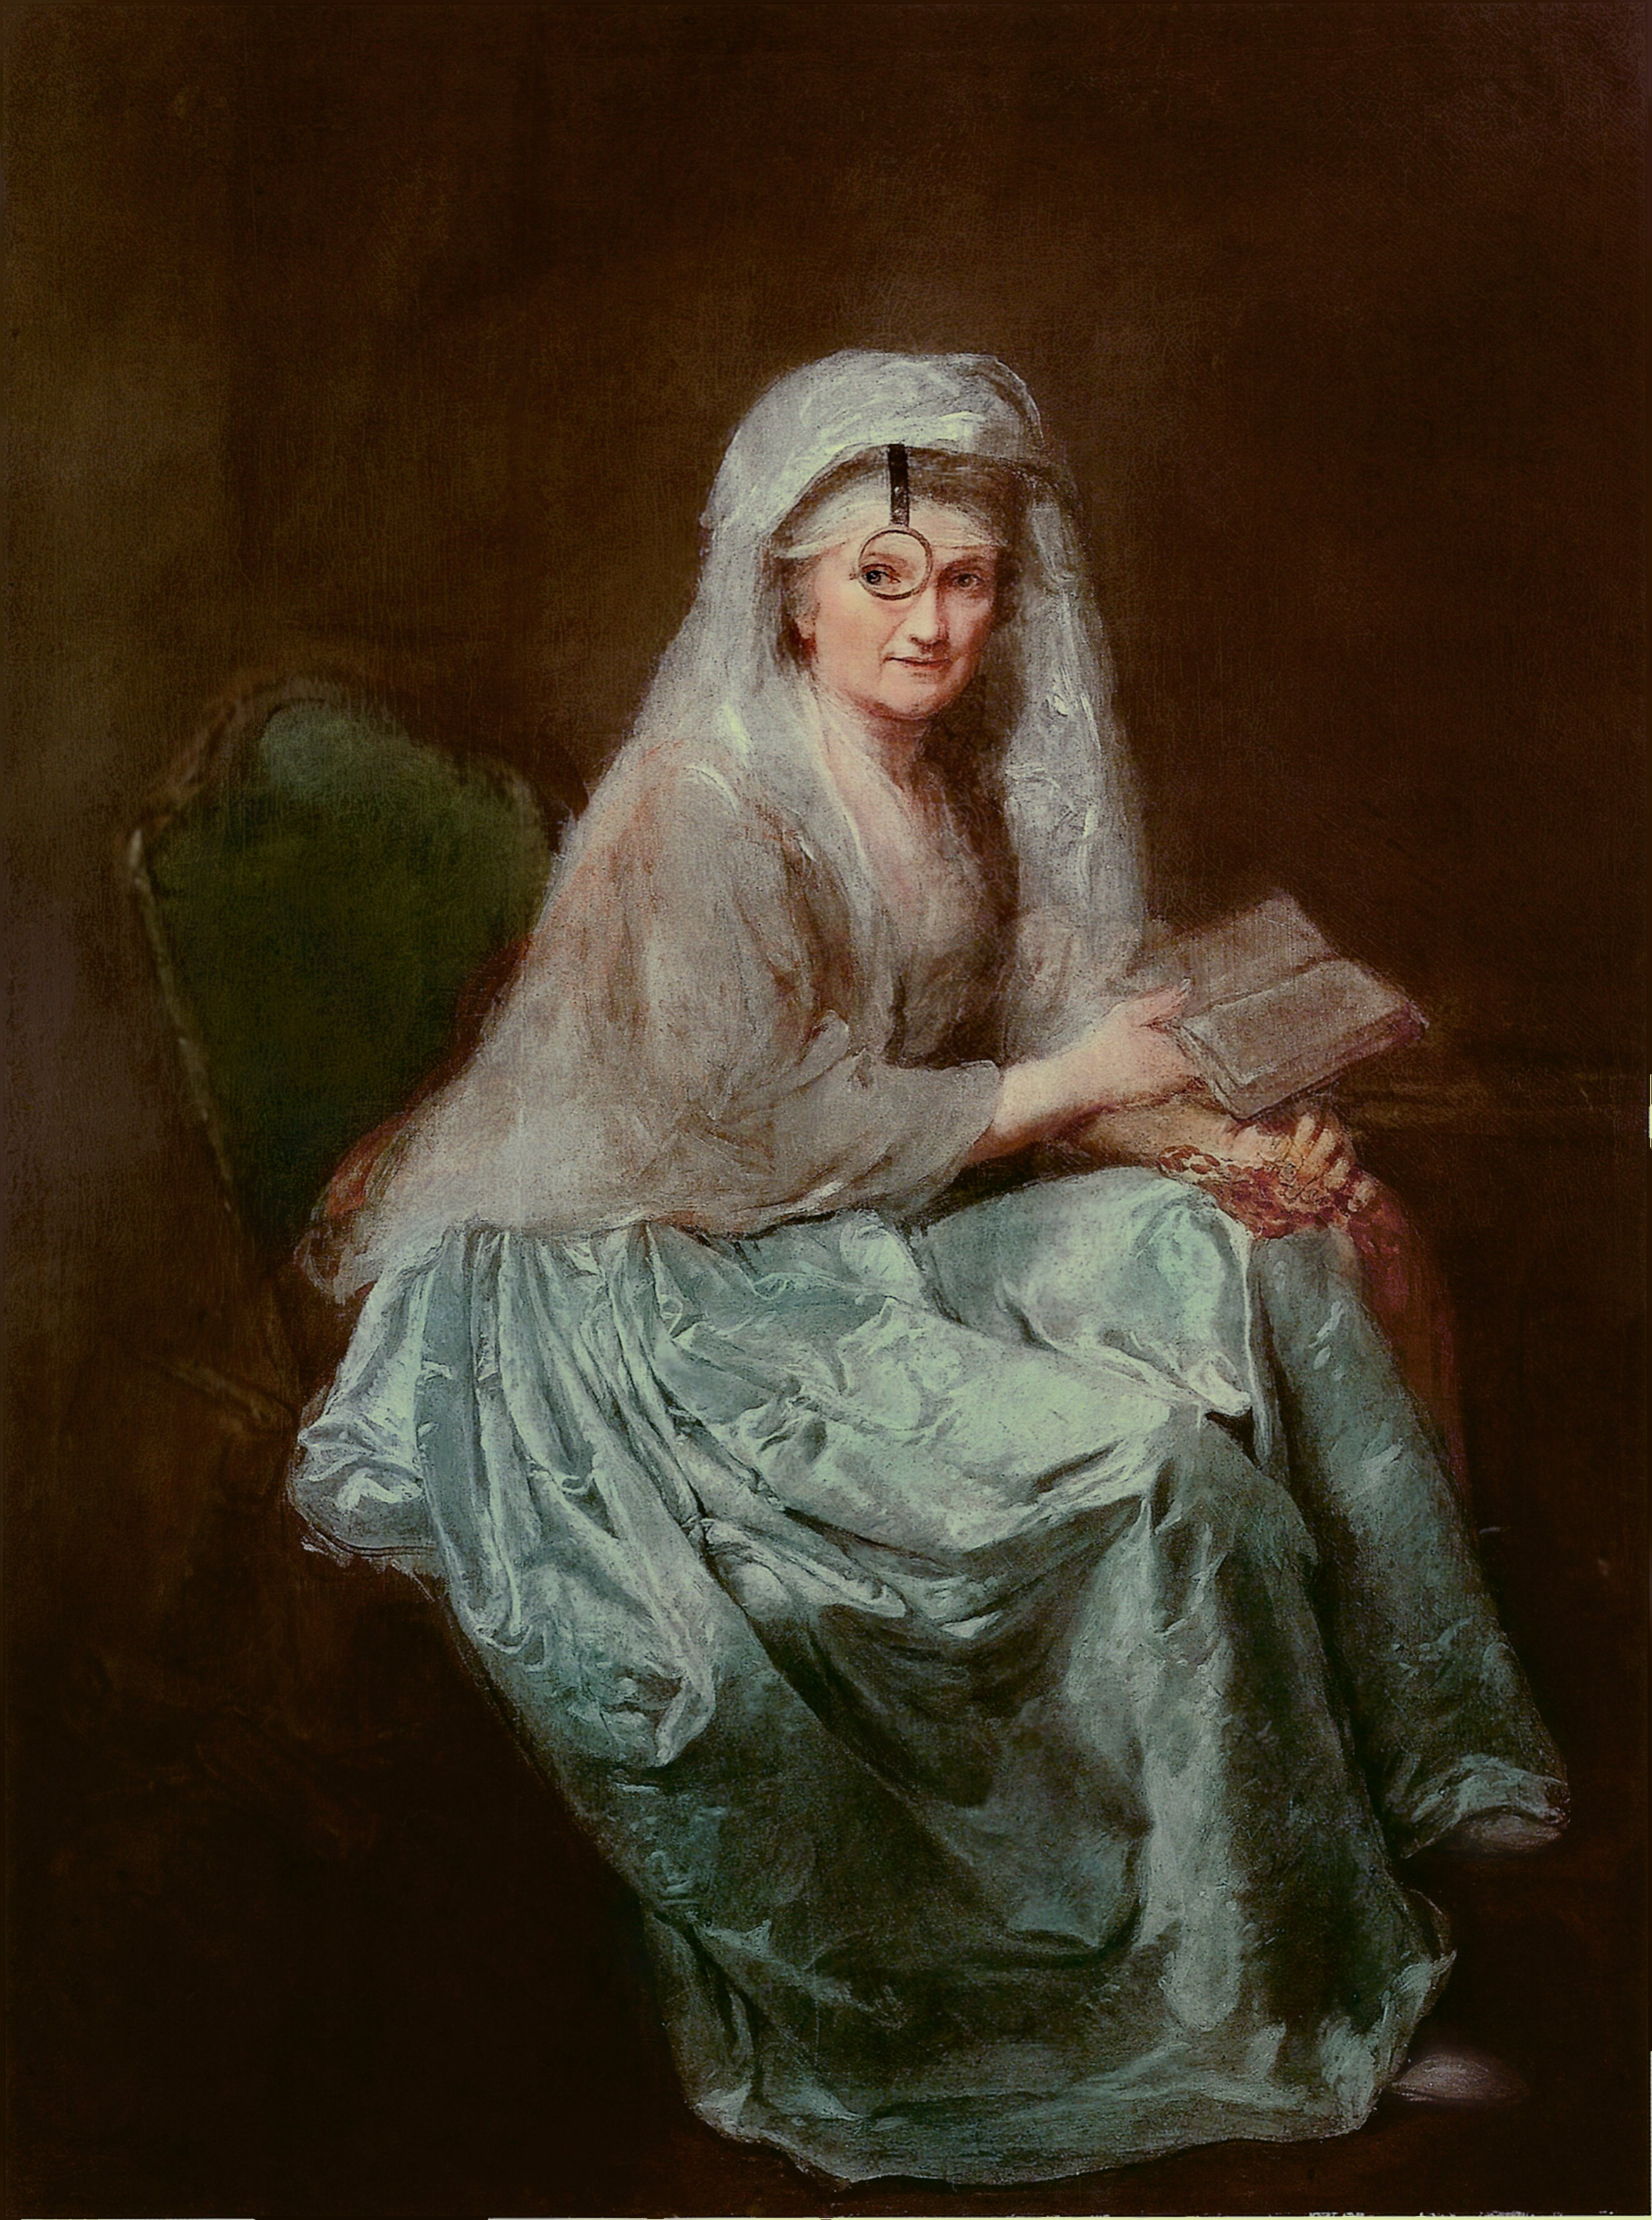 片眼鏡をかけた自画像 by Anna Dorothea Therbusch - 1777年 - 151 x 115 cm 